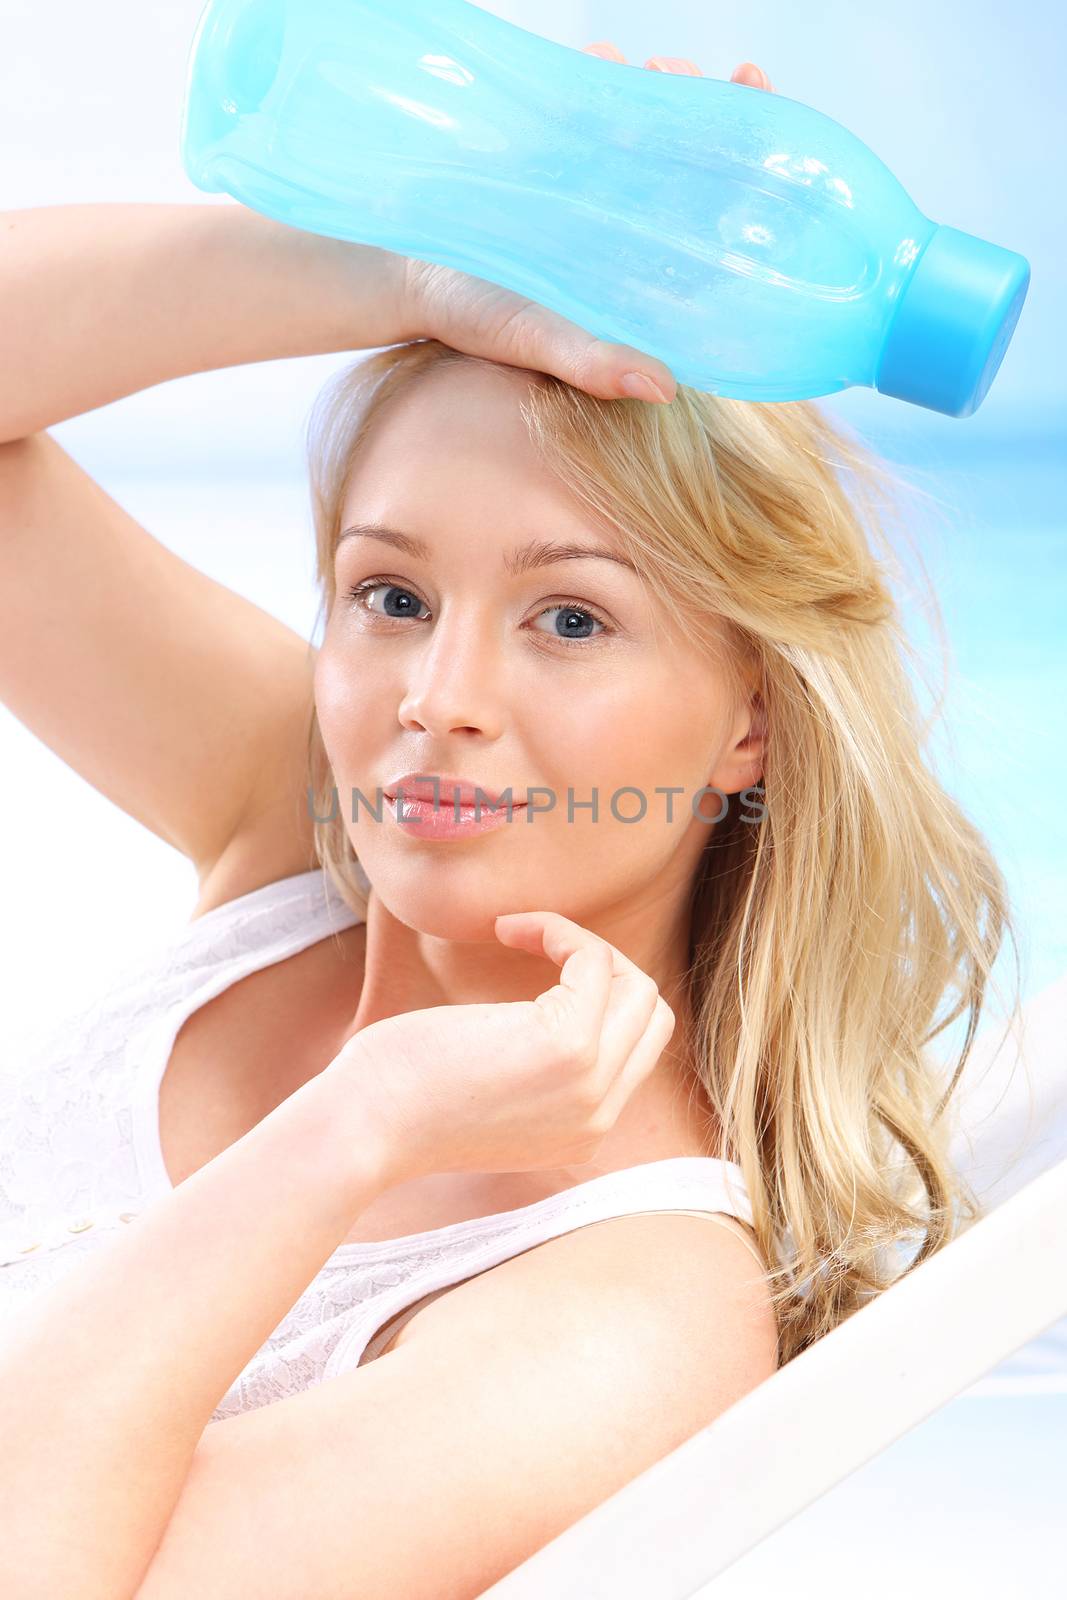 Hydration during heat-bath solar by robert_przybysz